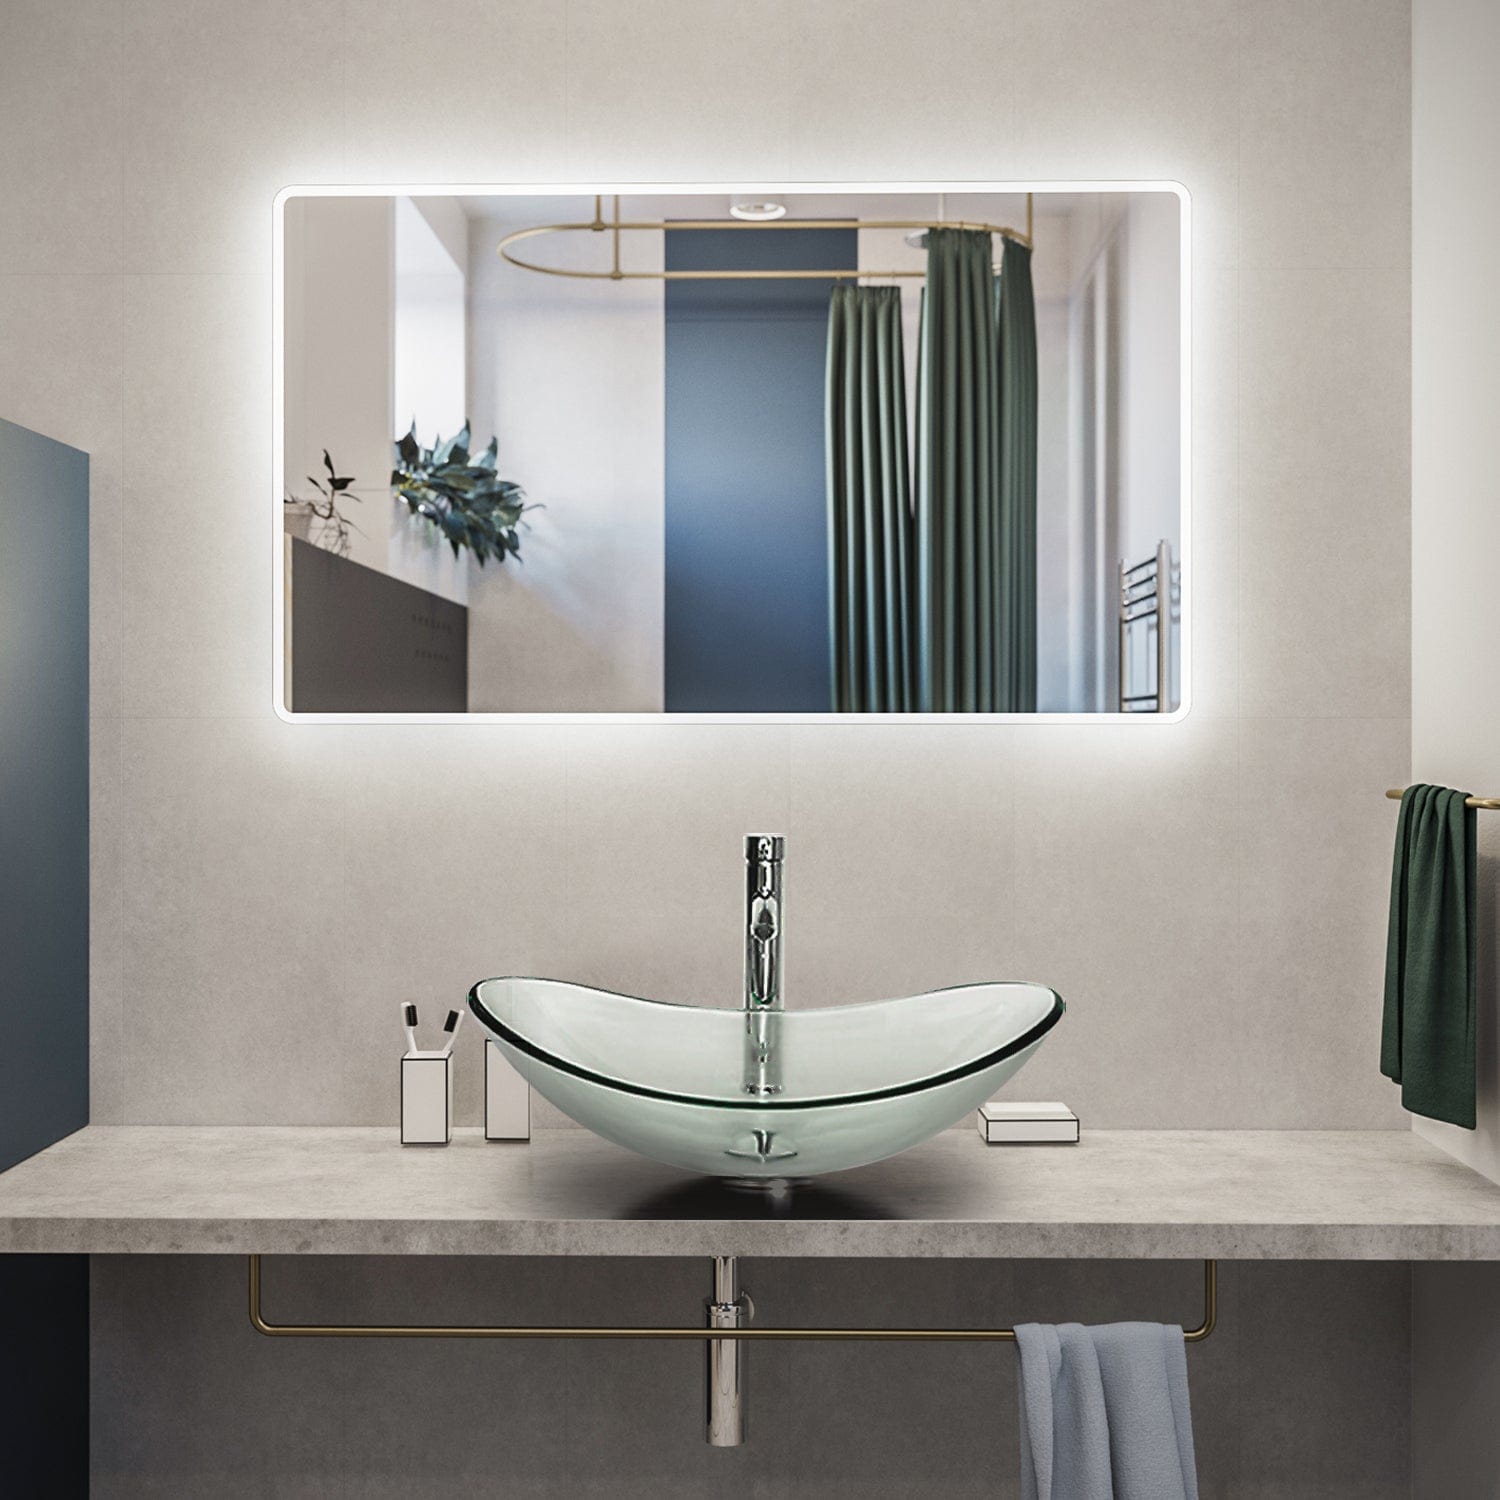 Elecwish Vessel Sinks Bathroom Vanity Vessel Sink Faucet Combo,Transparent Light Green display